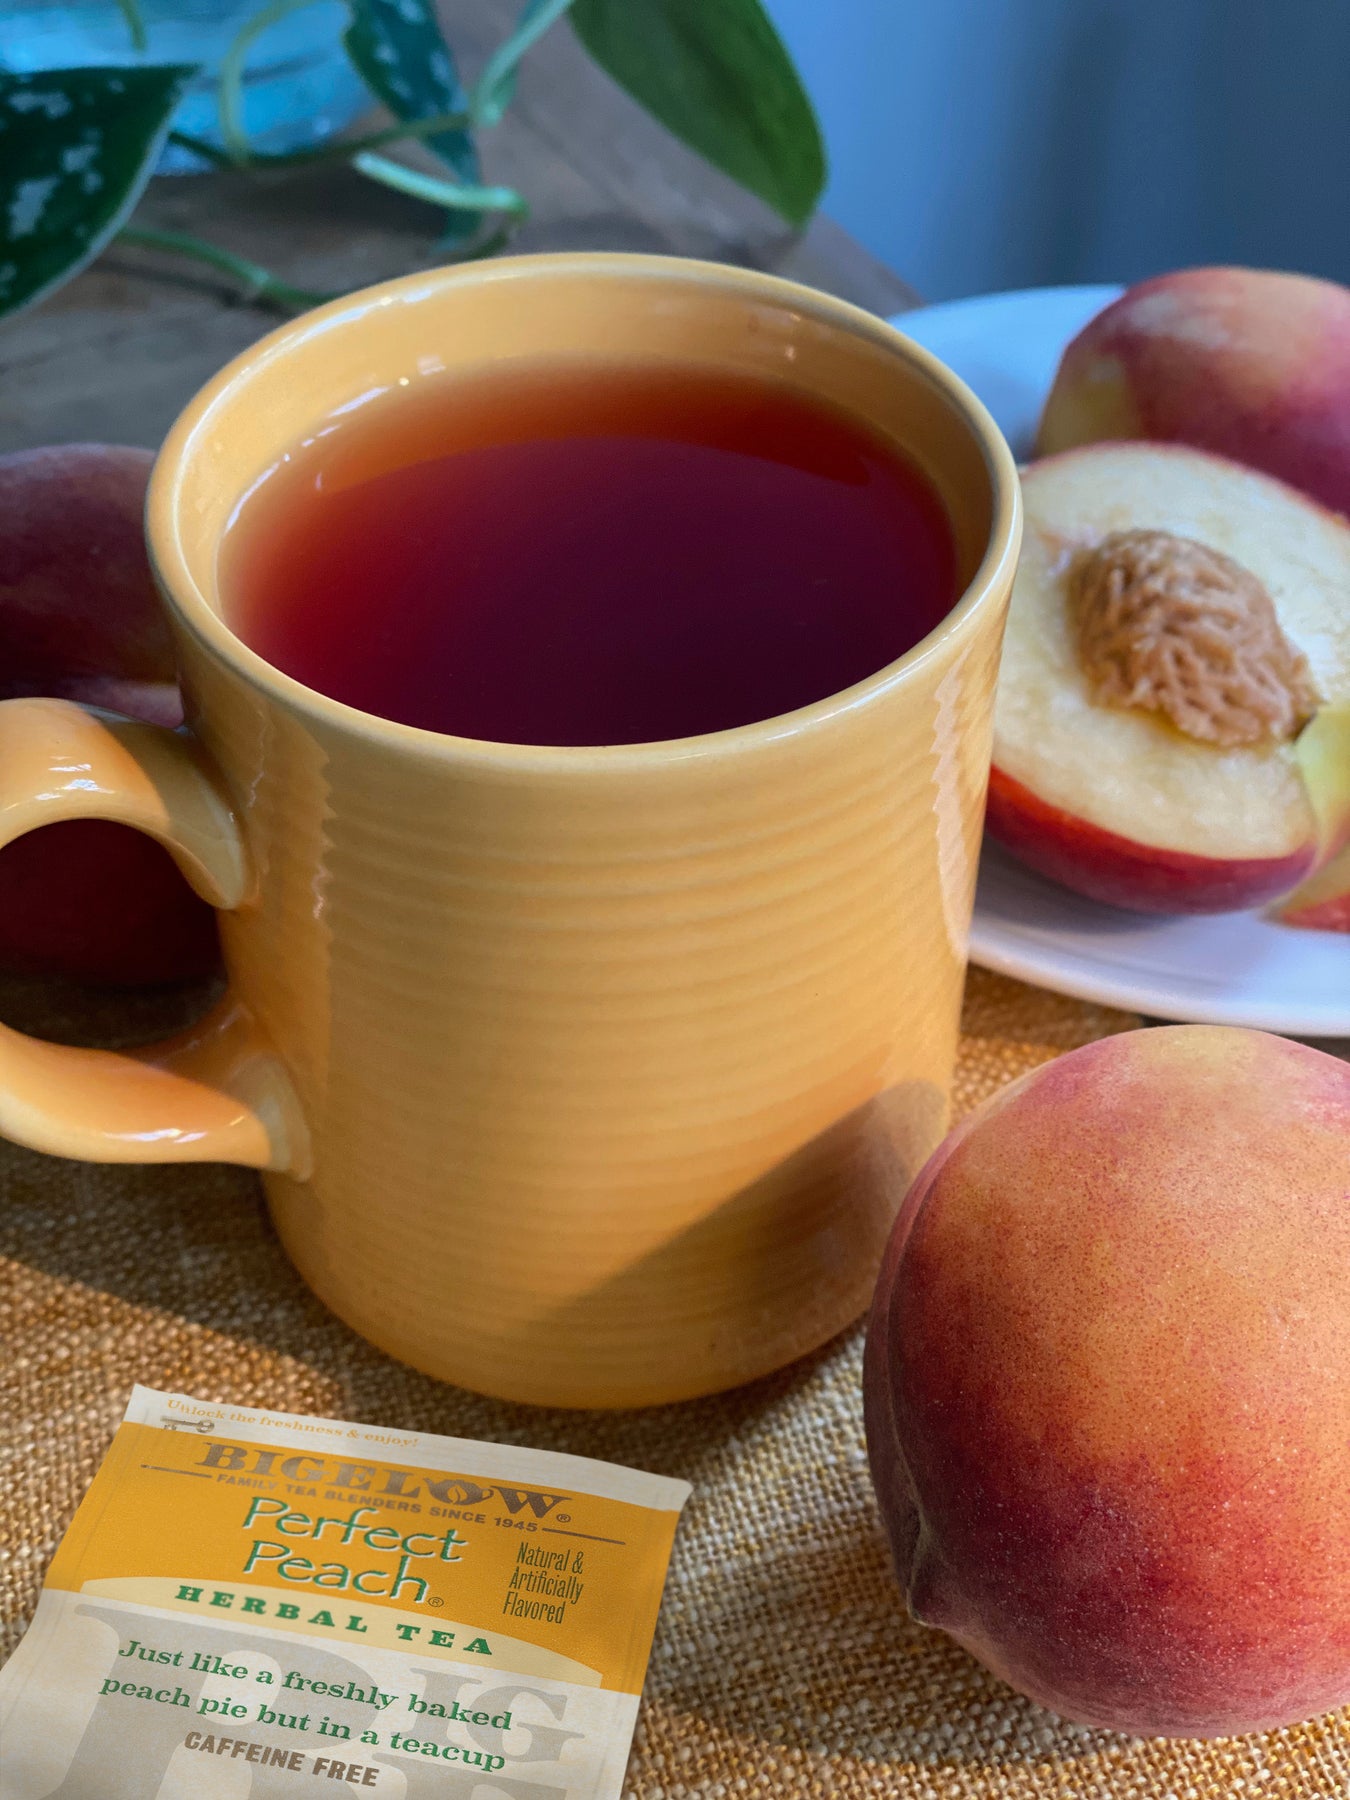 Peach Bellini Tea, Peach Herbal Tea, Peach Apricot Tea